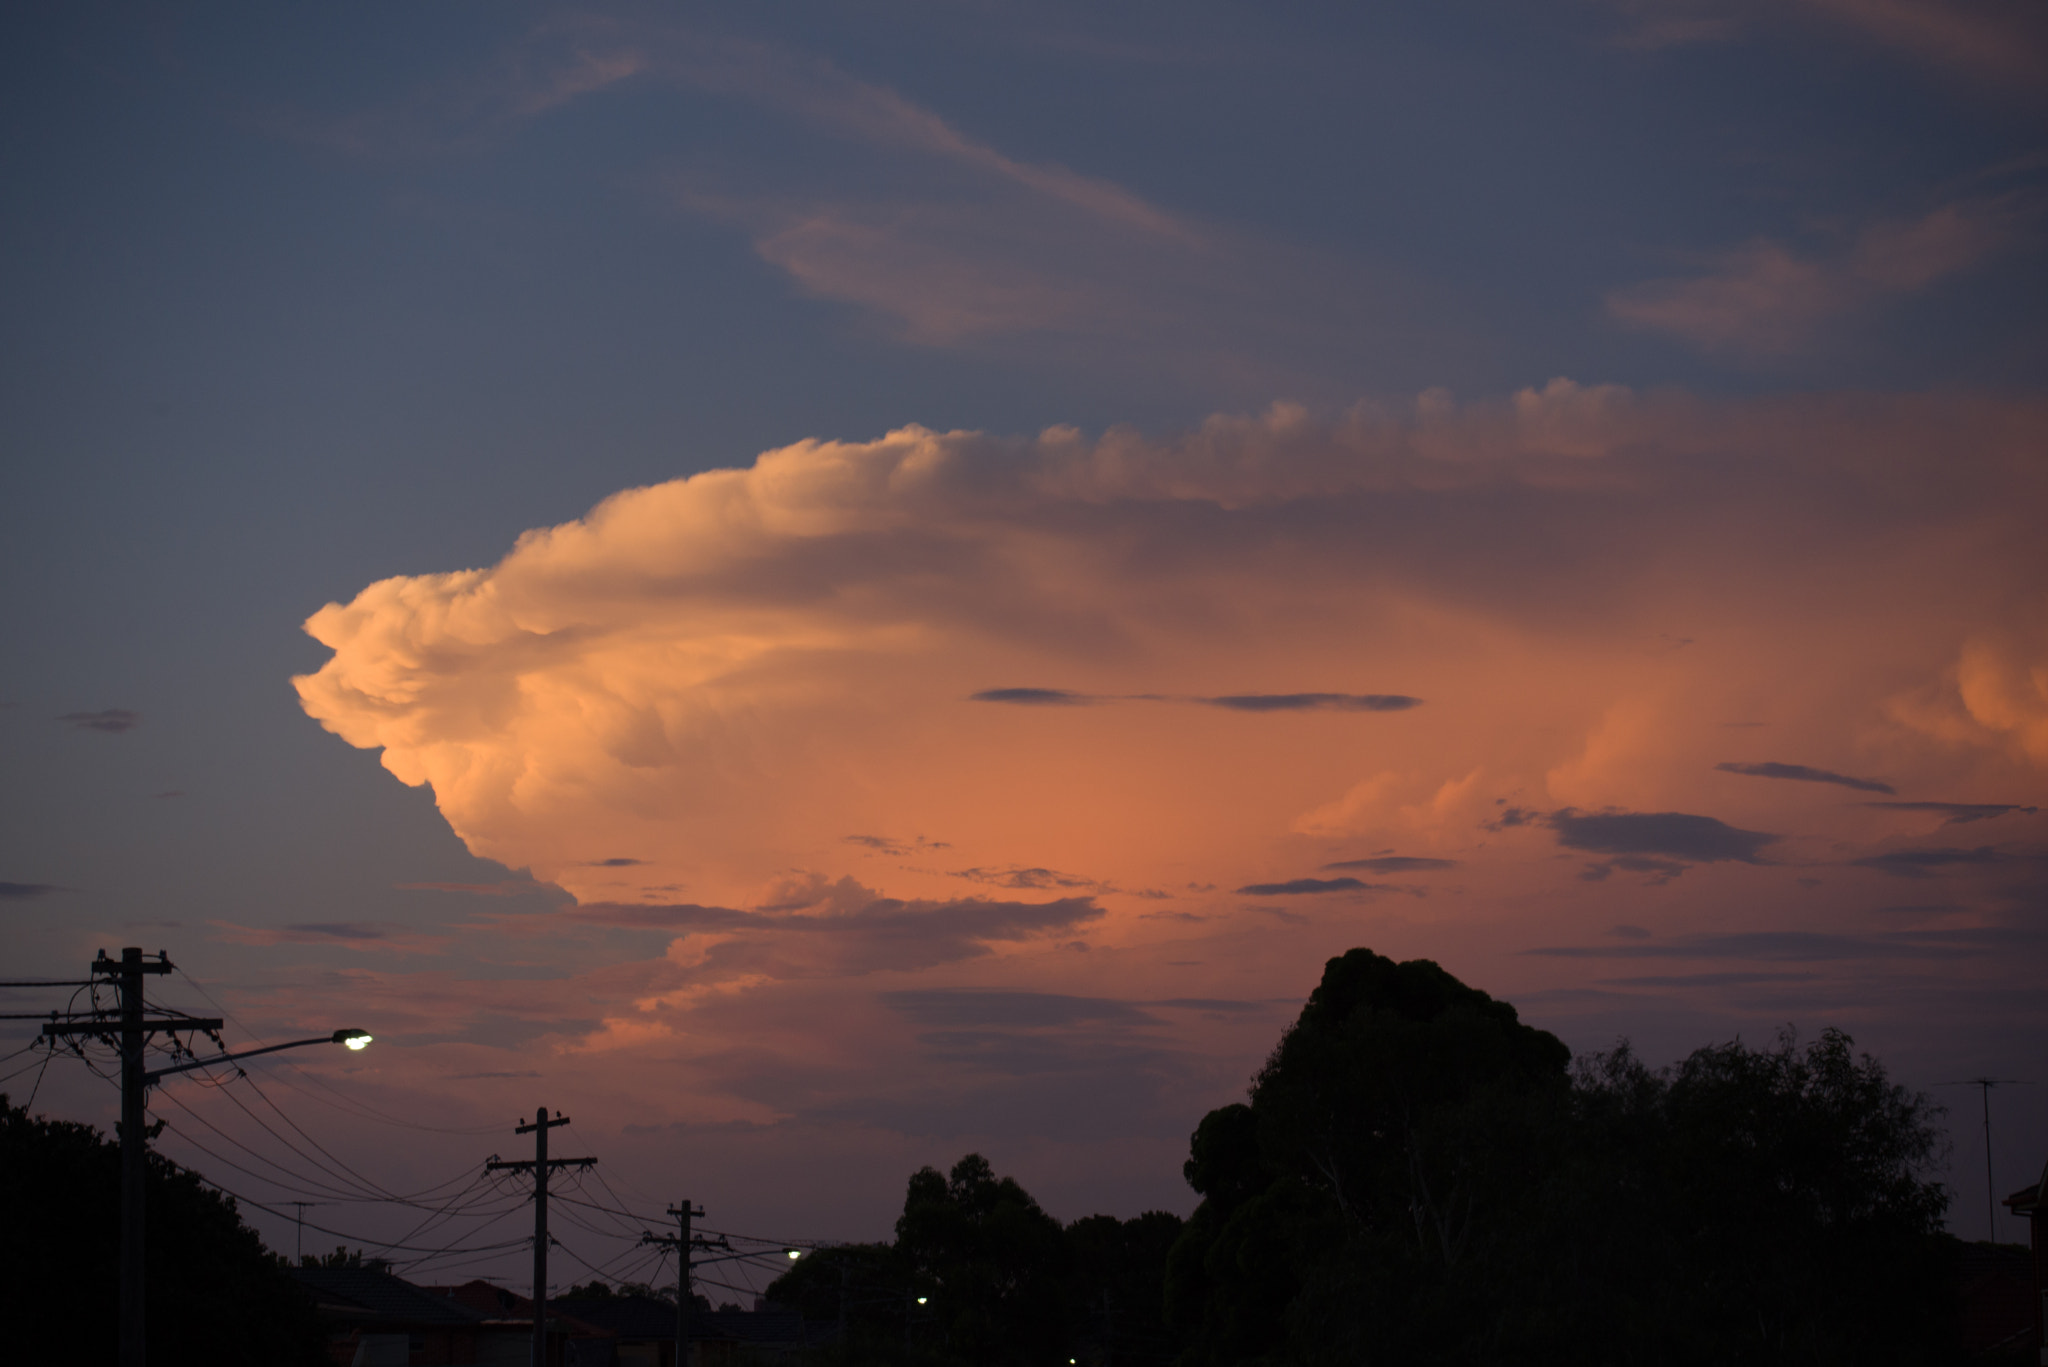 AF Zoom-Nikkor 28-80mm f/3.5-5.6D sample photo. Cumulus cloud, dusk, kingsford nsw photography